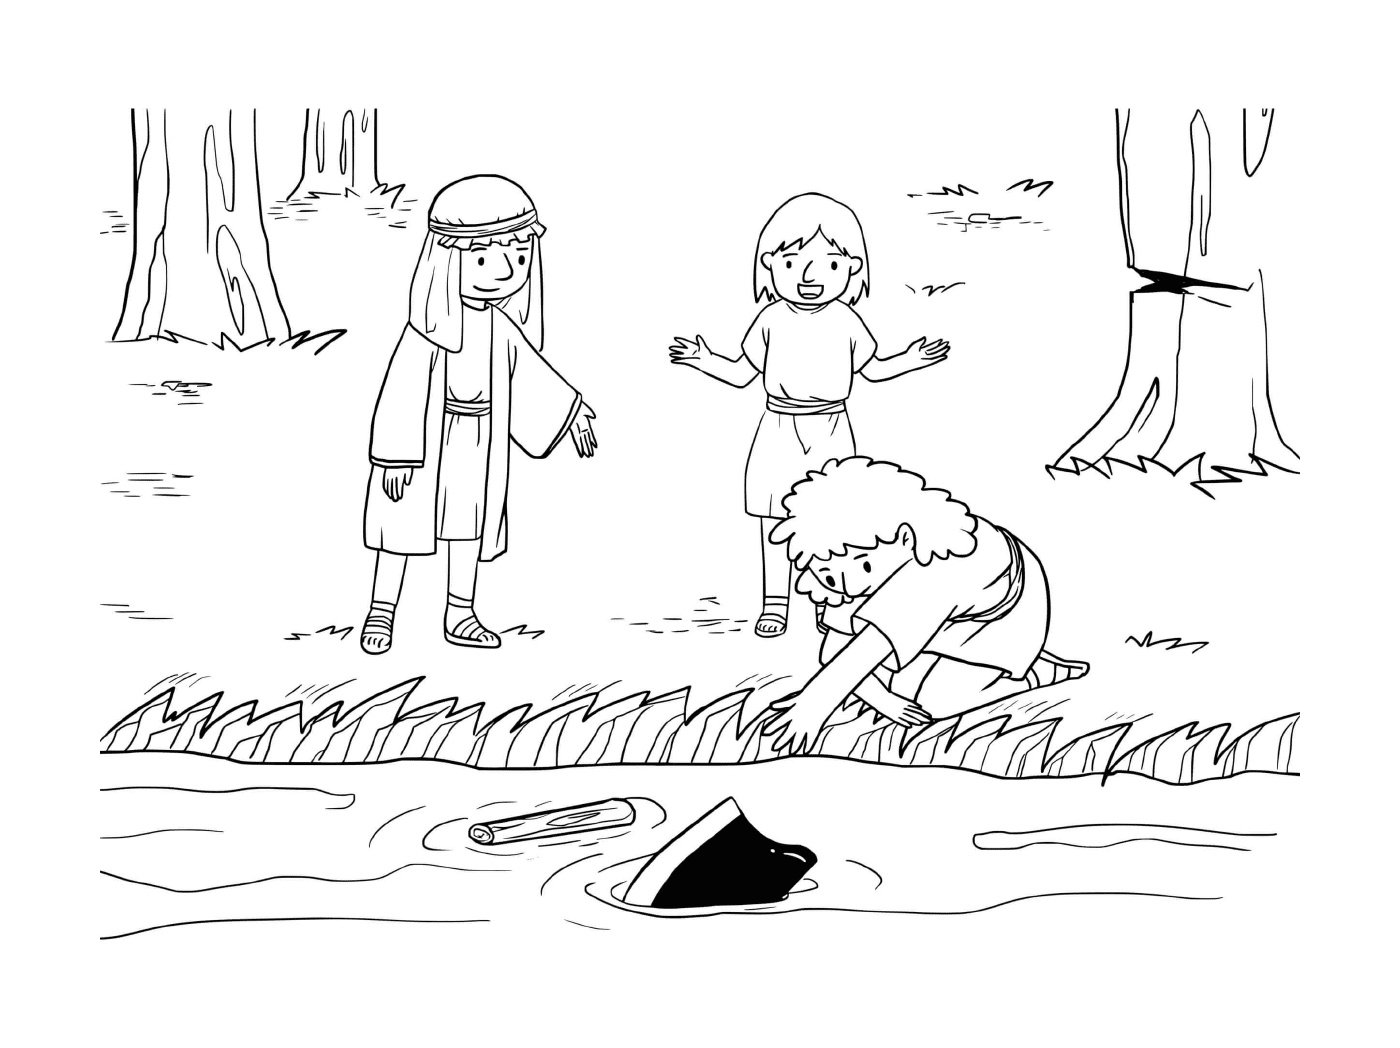  Junge und Mädchen spielen in einem Teich 